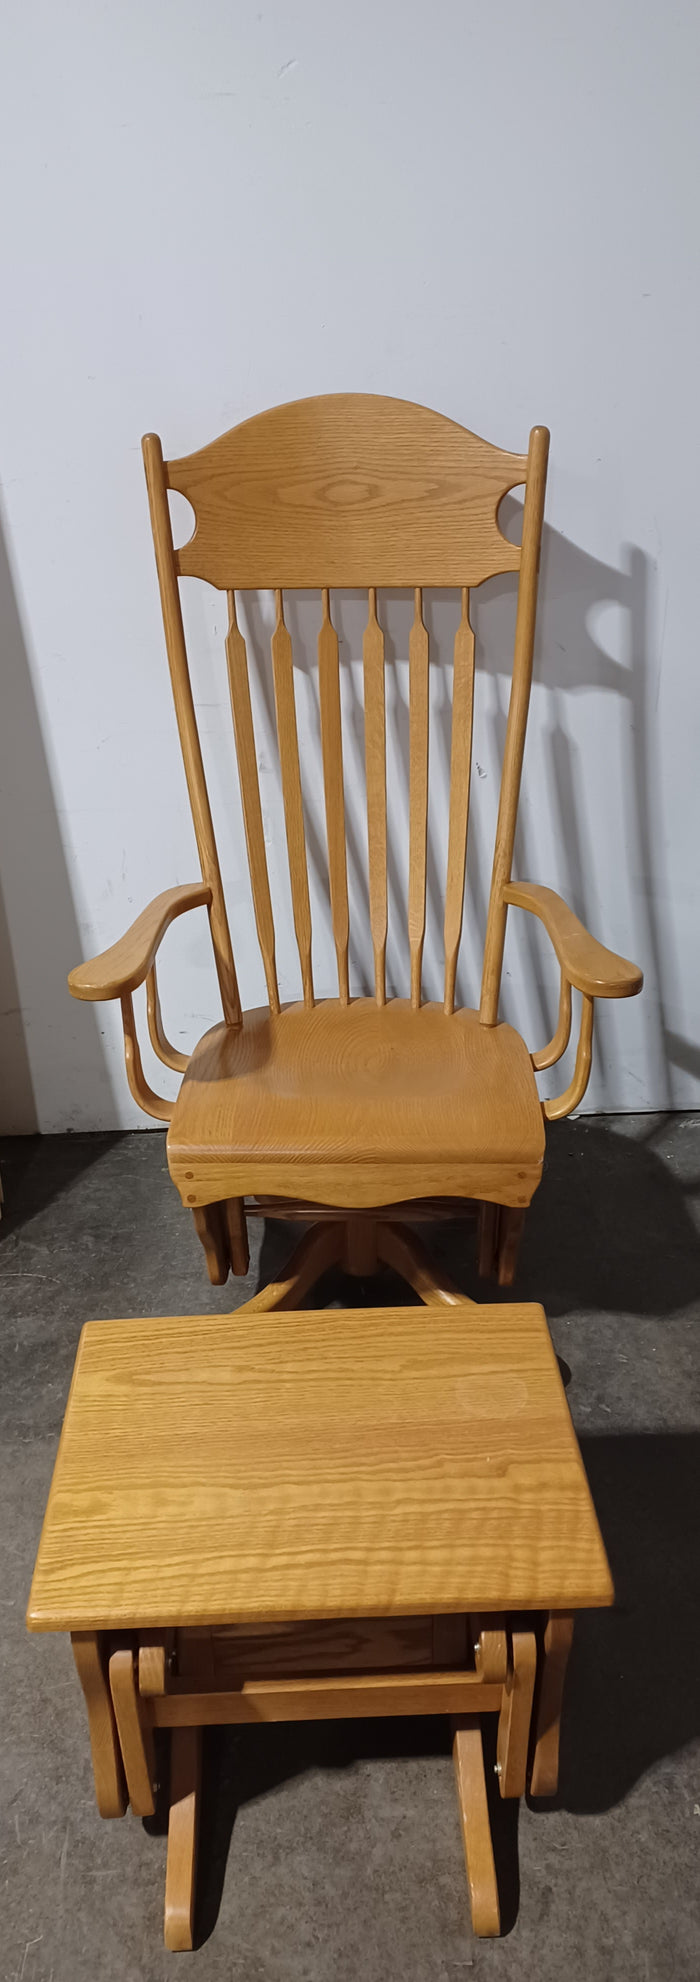 Wooden Reclining Chair w/ Reclining Ottoman